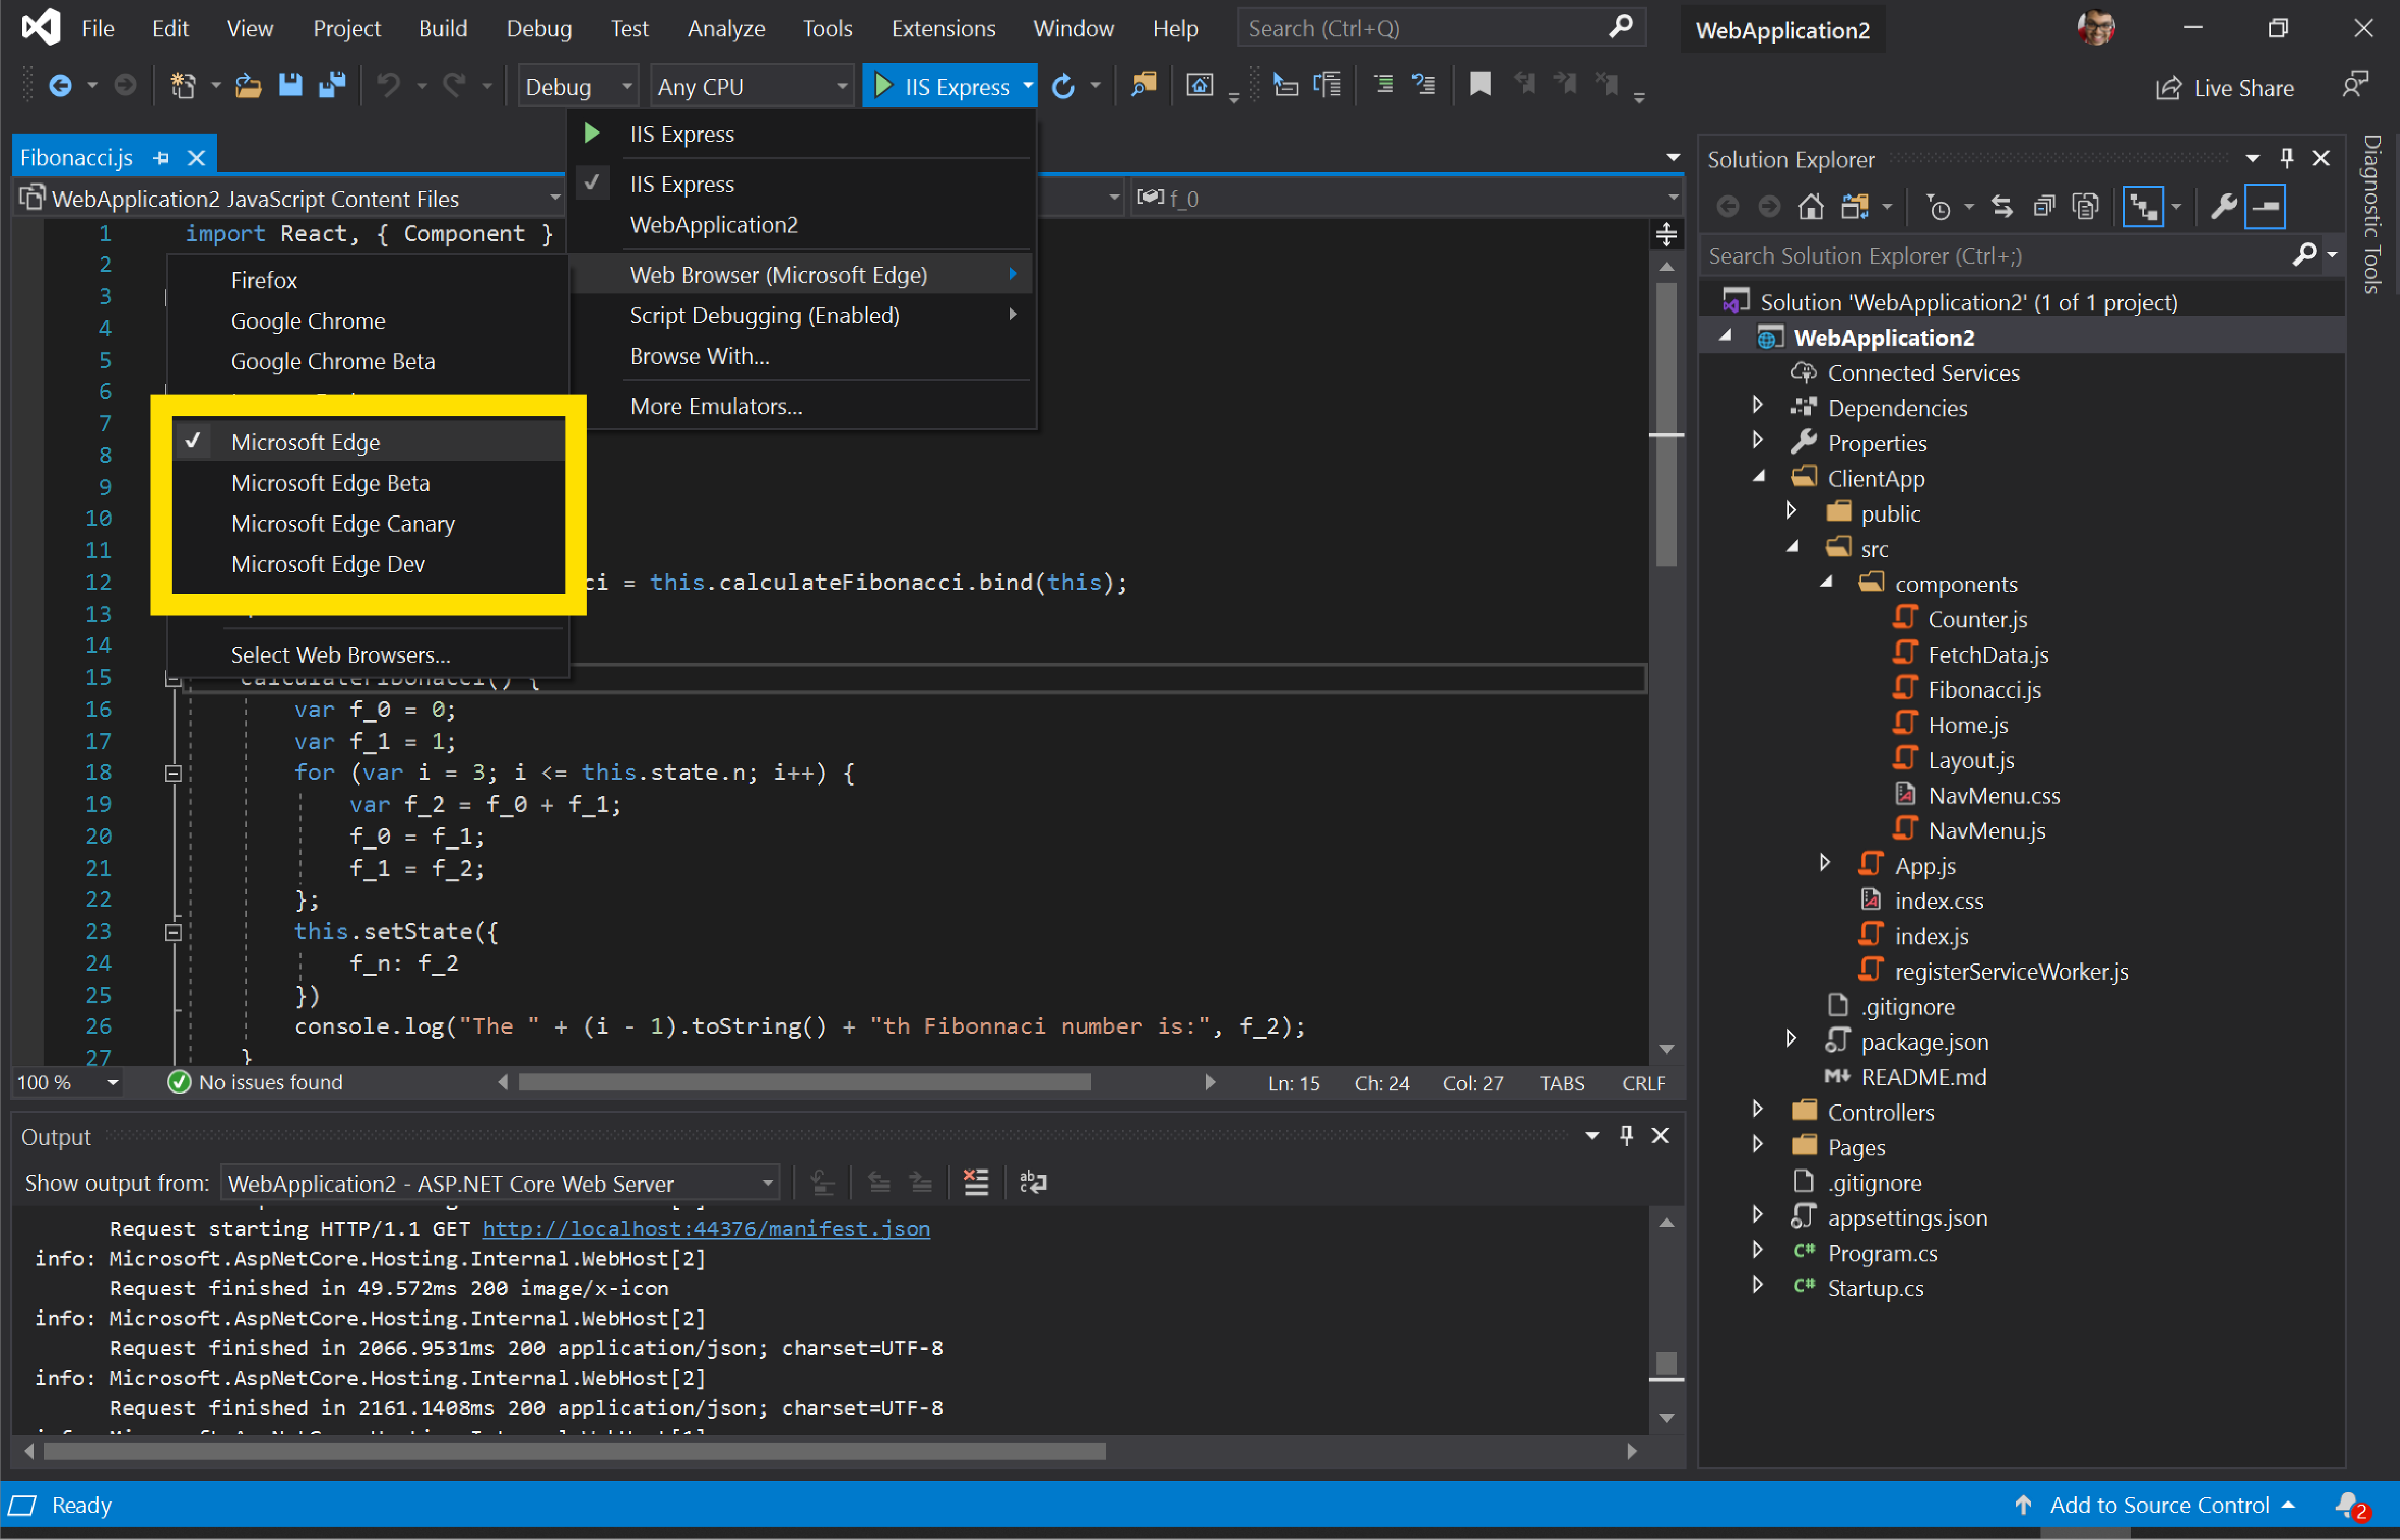 Visual Studio с возможностью запуска веб-приложения в Microsoft Edge Canary, Dev или beta